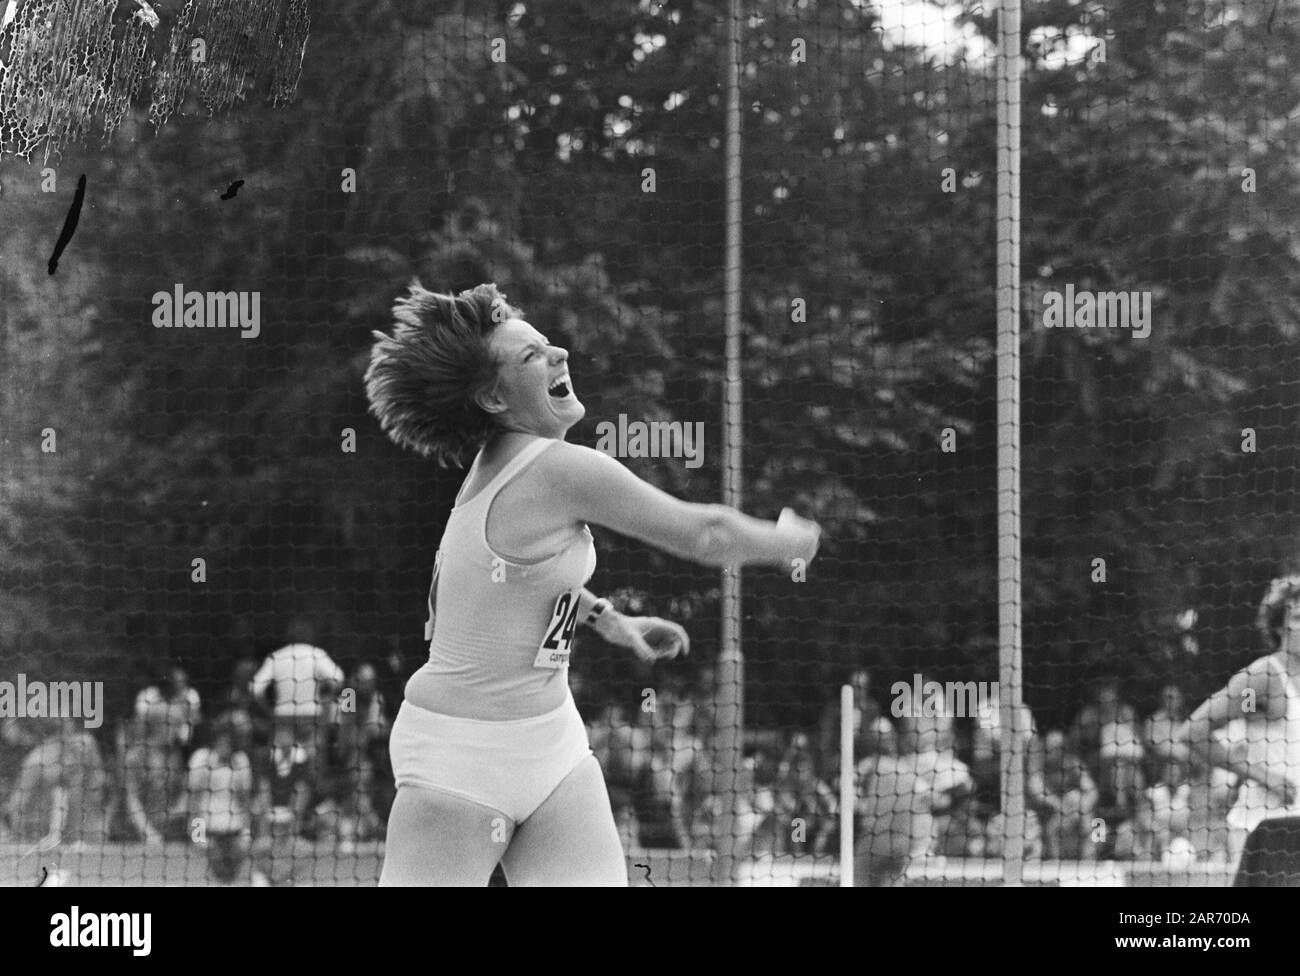 Niederländische Leichtathletik-Meisterschaften in Sittard; Ria Stalman bei ihrem Diskuswurf.; Stockfoto